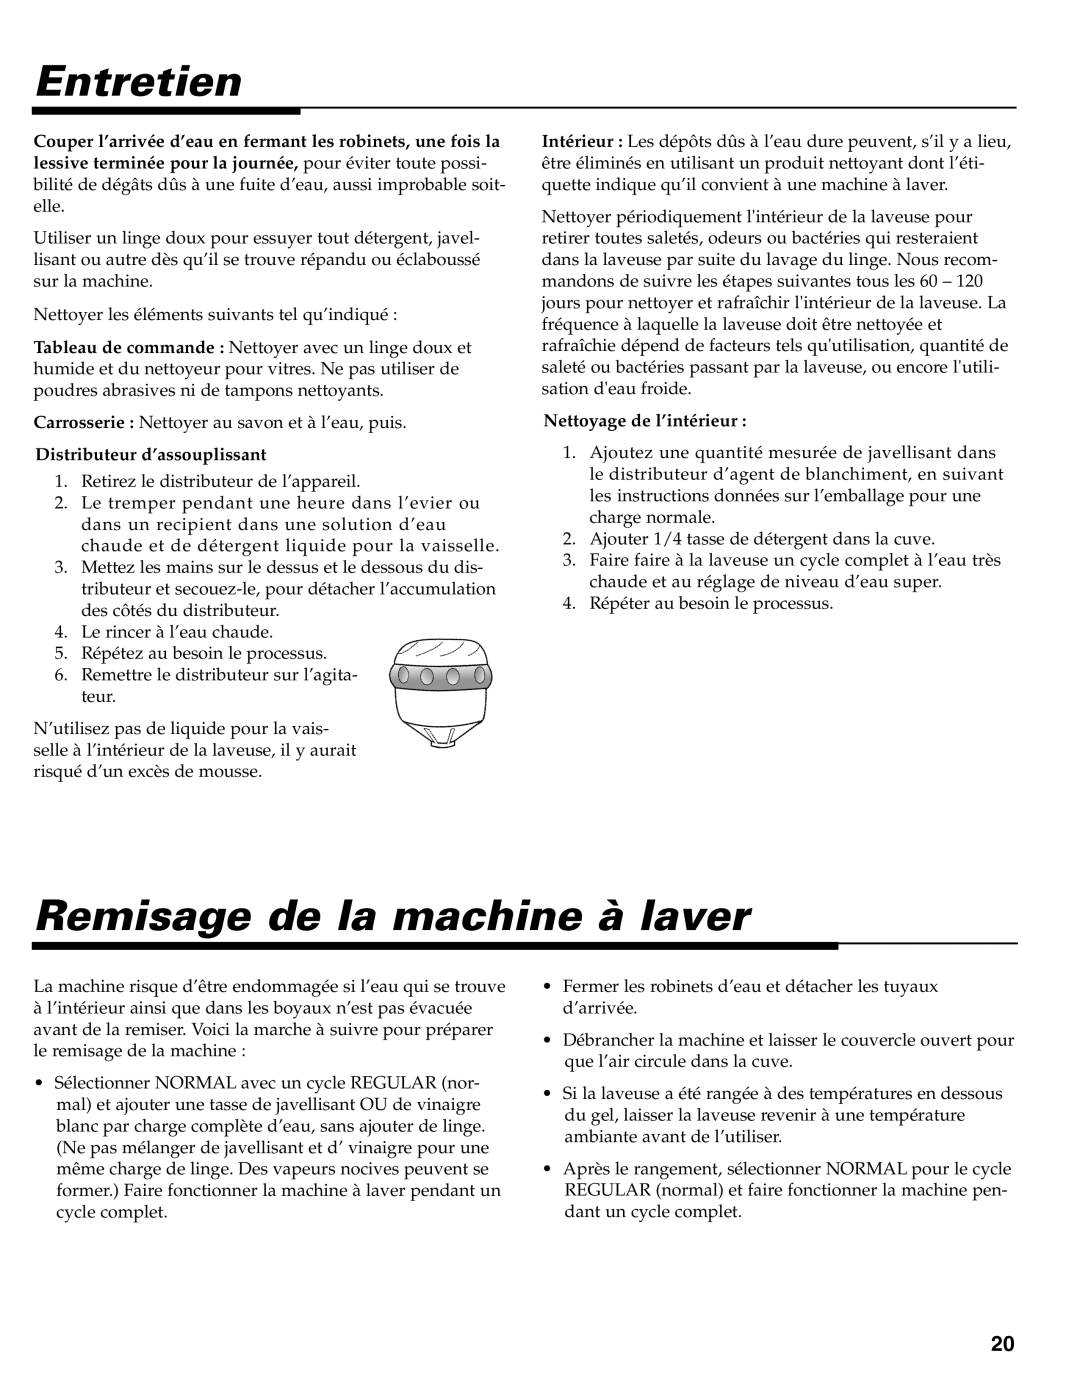 Maytag MAV-39 warranty Entretien, Remisage de la machine à laver, Distributeur d’assouplissant, Nettoyage de l’intérieur 